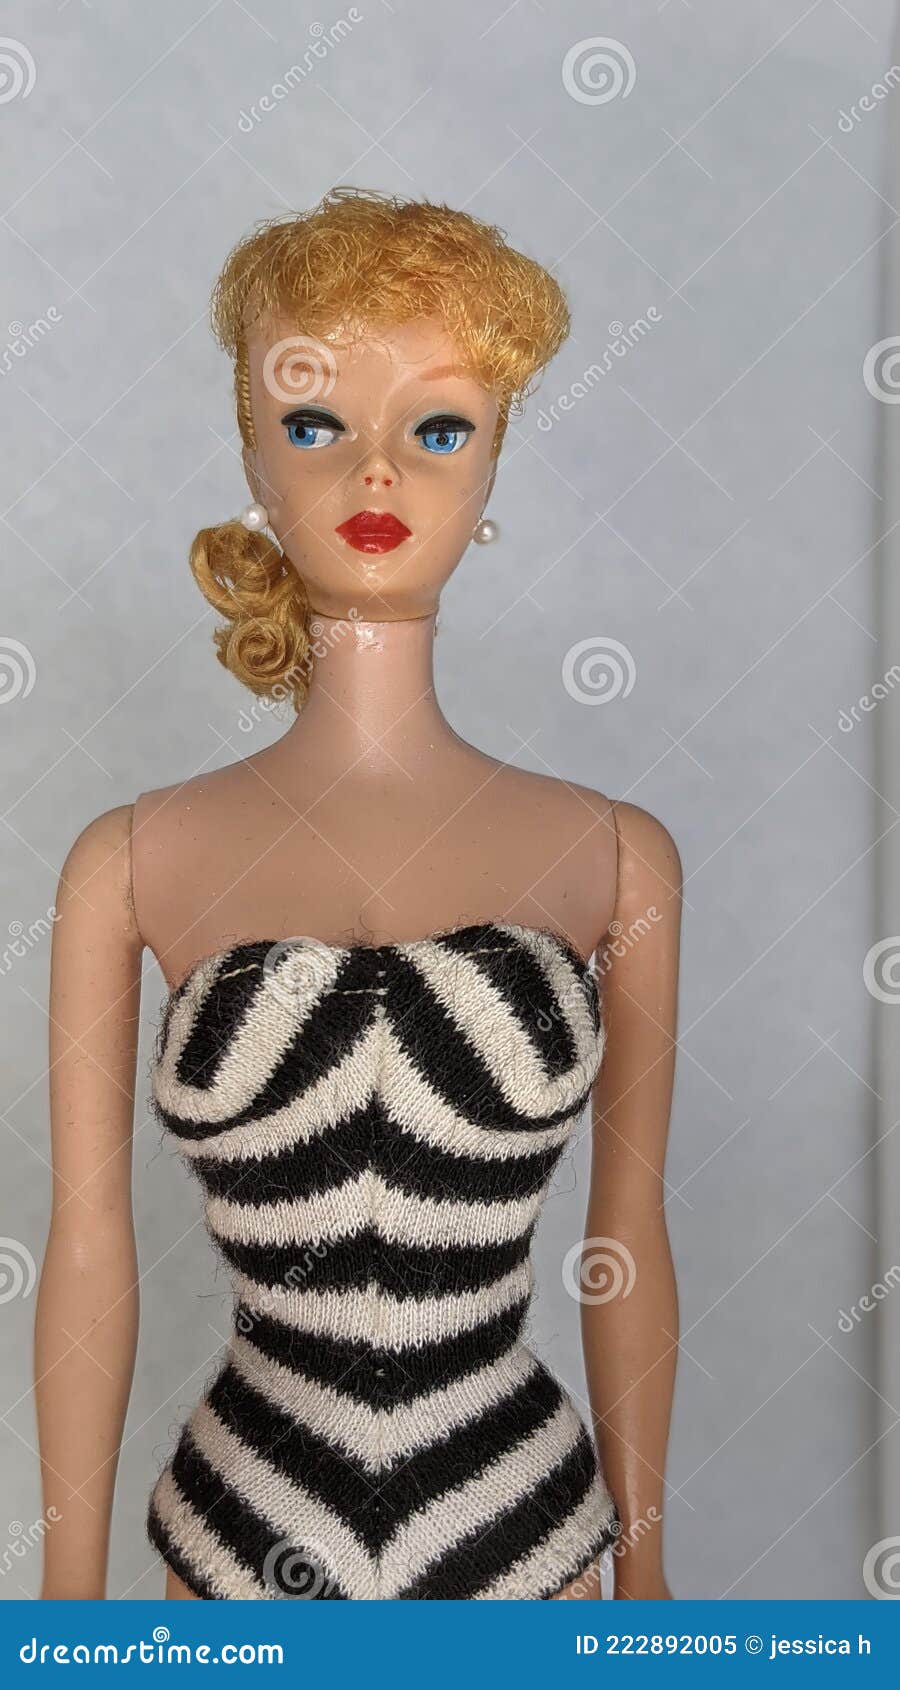 Barbie Vintage Con Traje De Baño a Rayas - Imagen de swimsuit, textil: